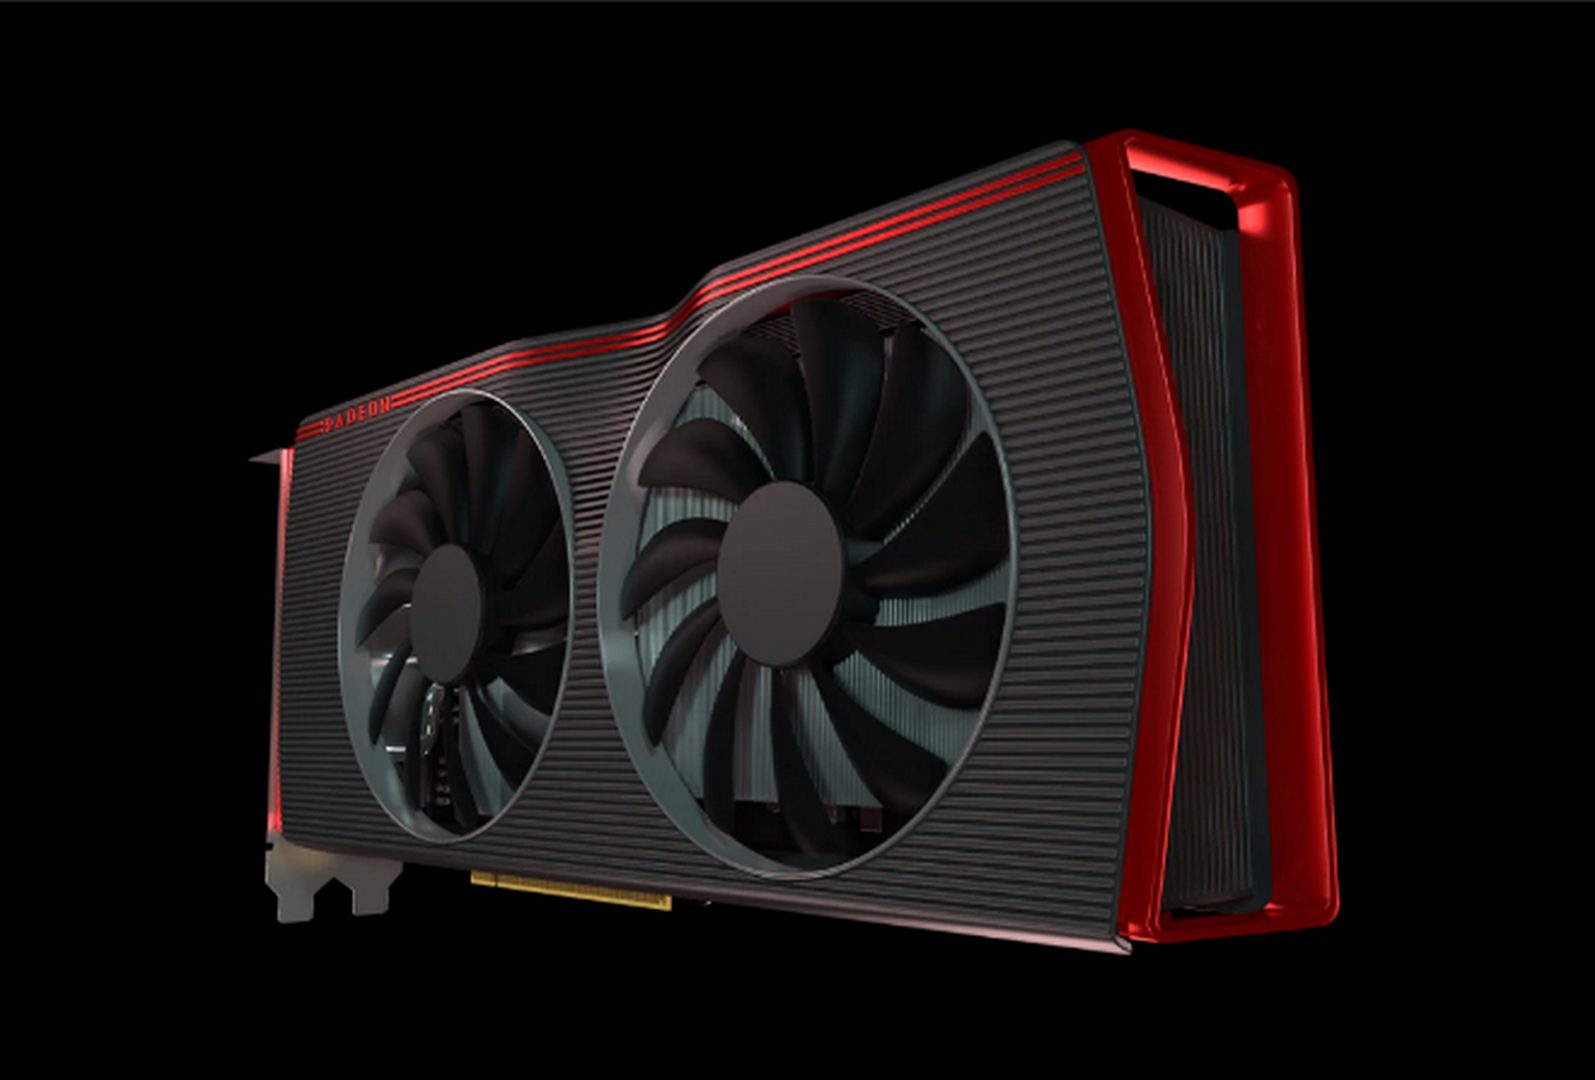 AMD เปิดตัวกราฟิกการ์ดใหม่ ในชื่อตระกูล AMD Radeon™ RX 5600 Series: ให้ประสบการณ์ที่น่าทึ่งด้วยการแสดงผลในระดับ 1080p ที่ดีกว่า